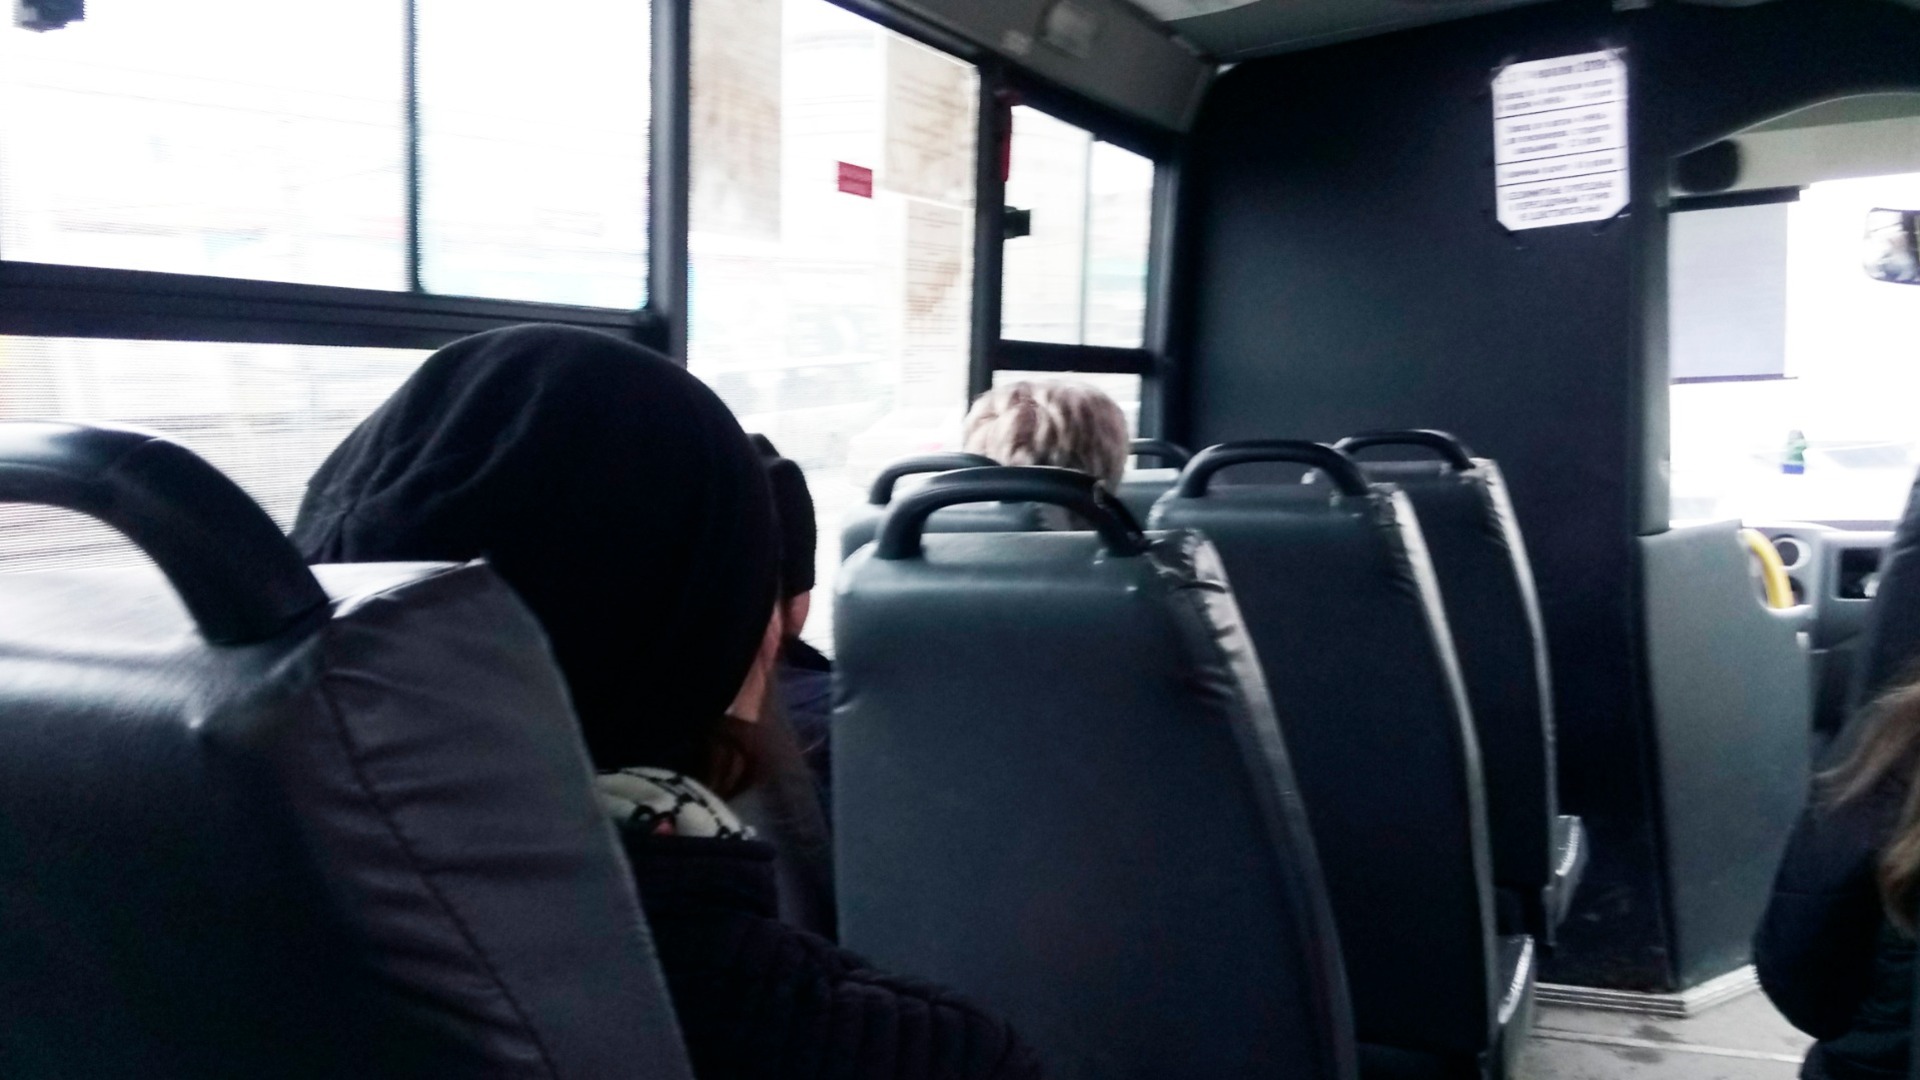 Пожилая женщина в Нижнем Тагиле нецензурно ругалась в автобусе